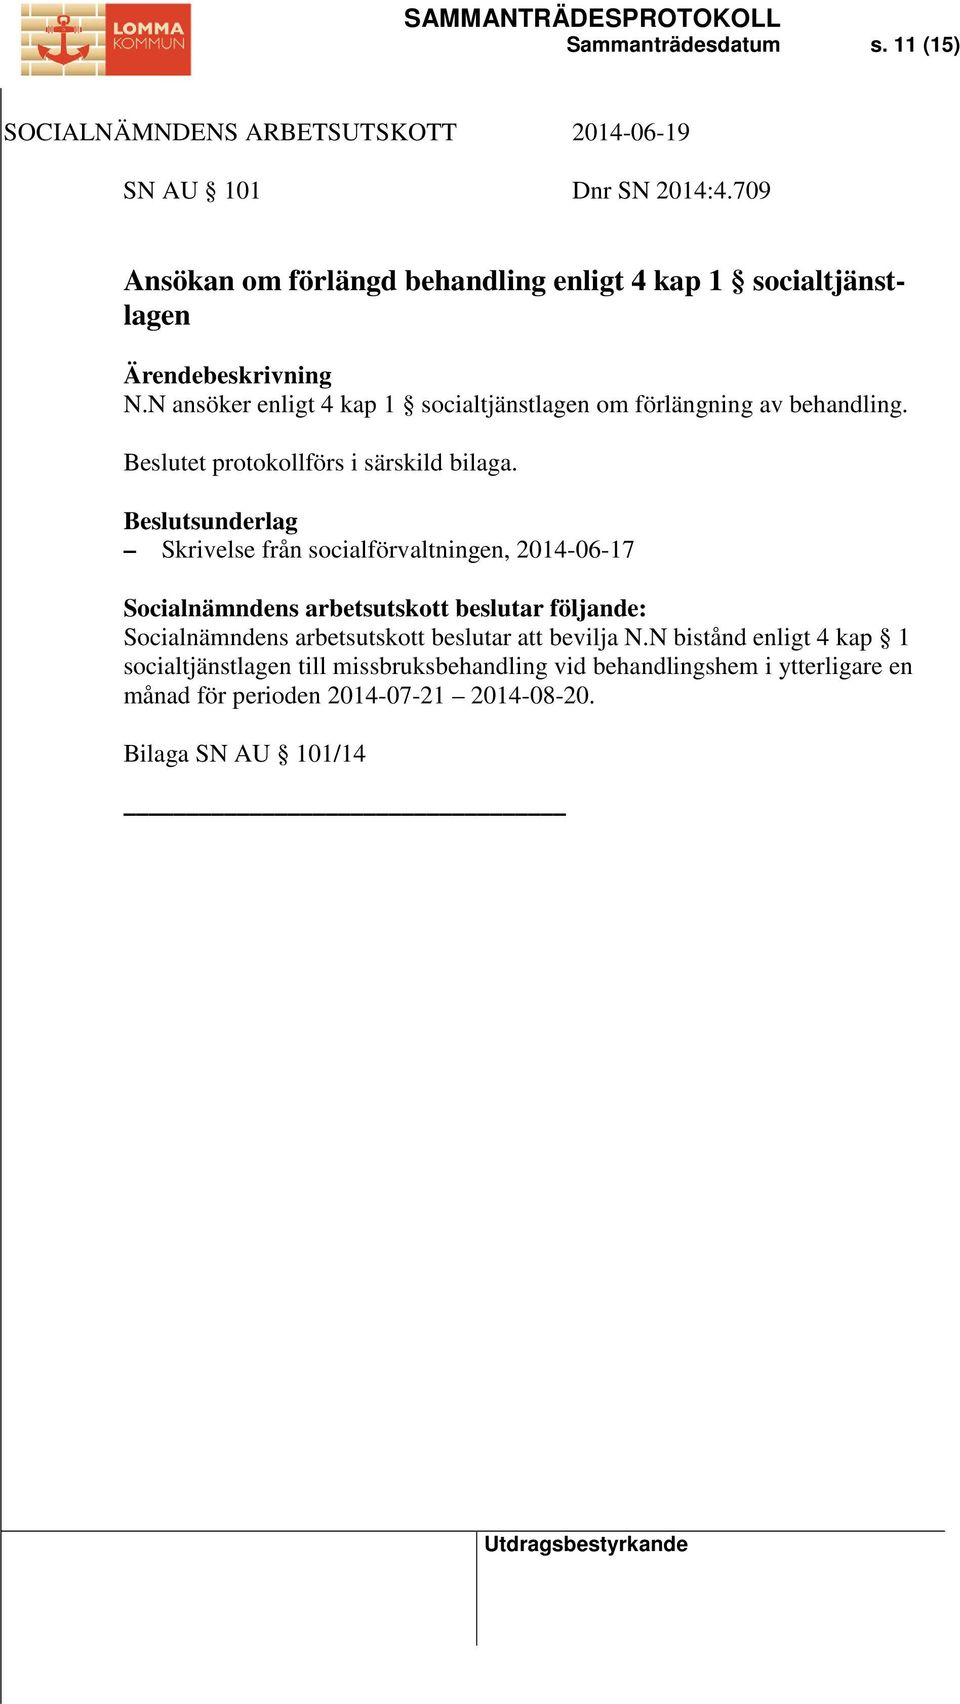 Skrivelse från socialförvaltningen, 2014-06-17 Socialnämndens arbetsutskott beslutar att bevilja N.